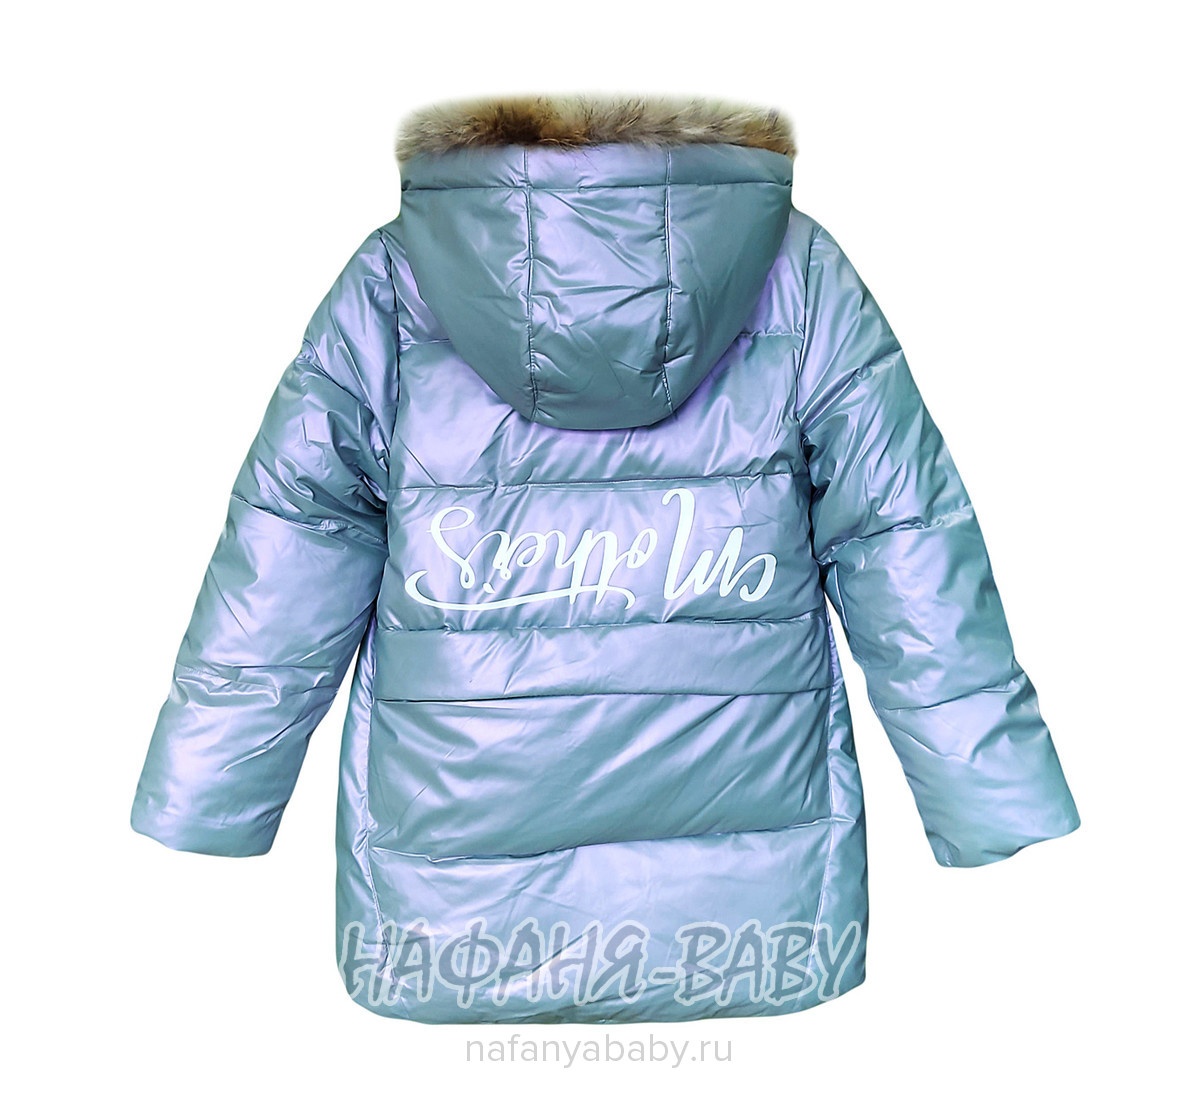 Зимняя удлиненная куртка  YIKAI, купить в интернет магазине Нафаня. арт: 626, цвет серо-голубой